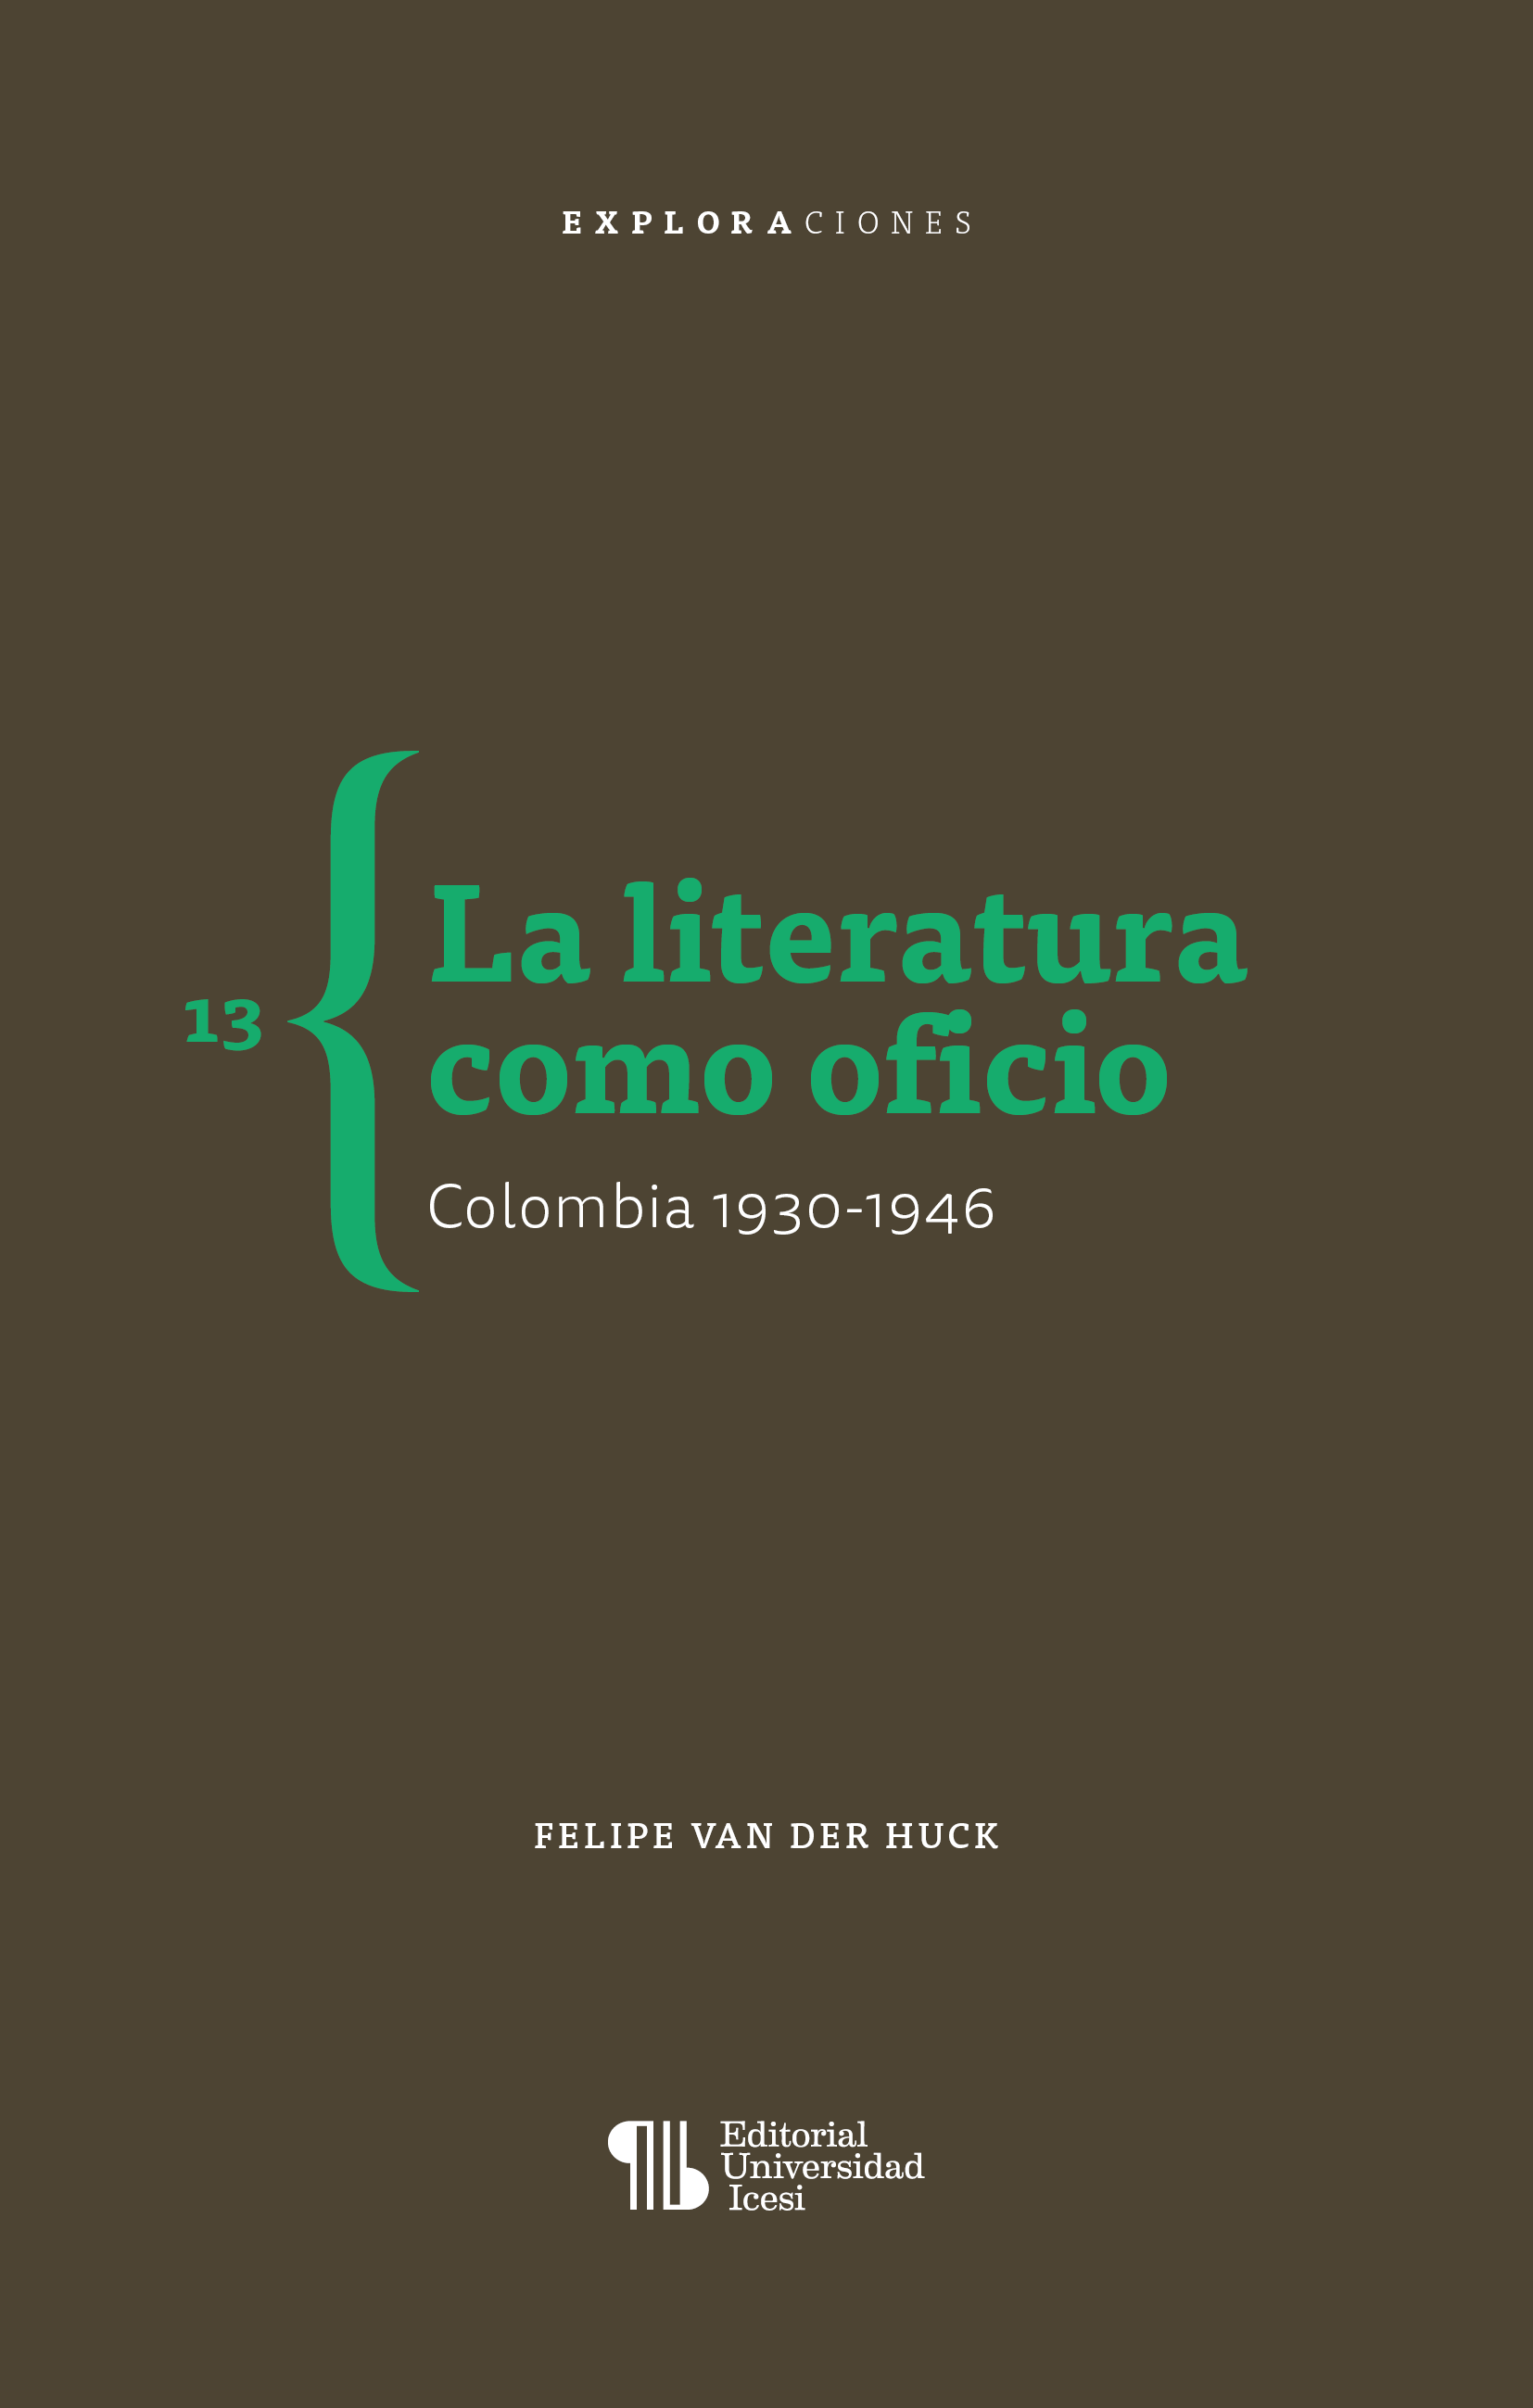 Imagen de portada del libro La literatura como oficio